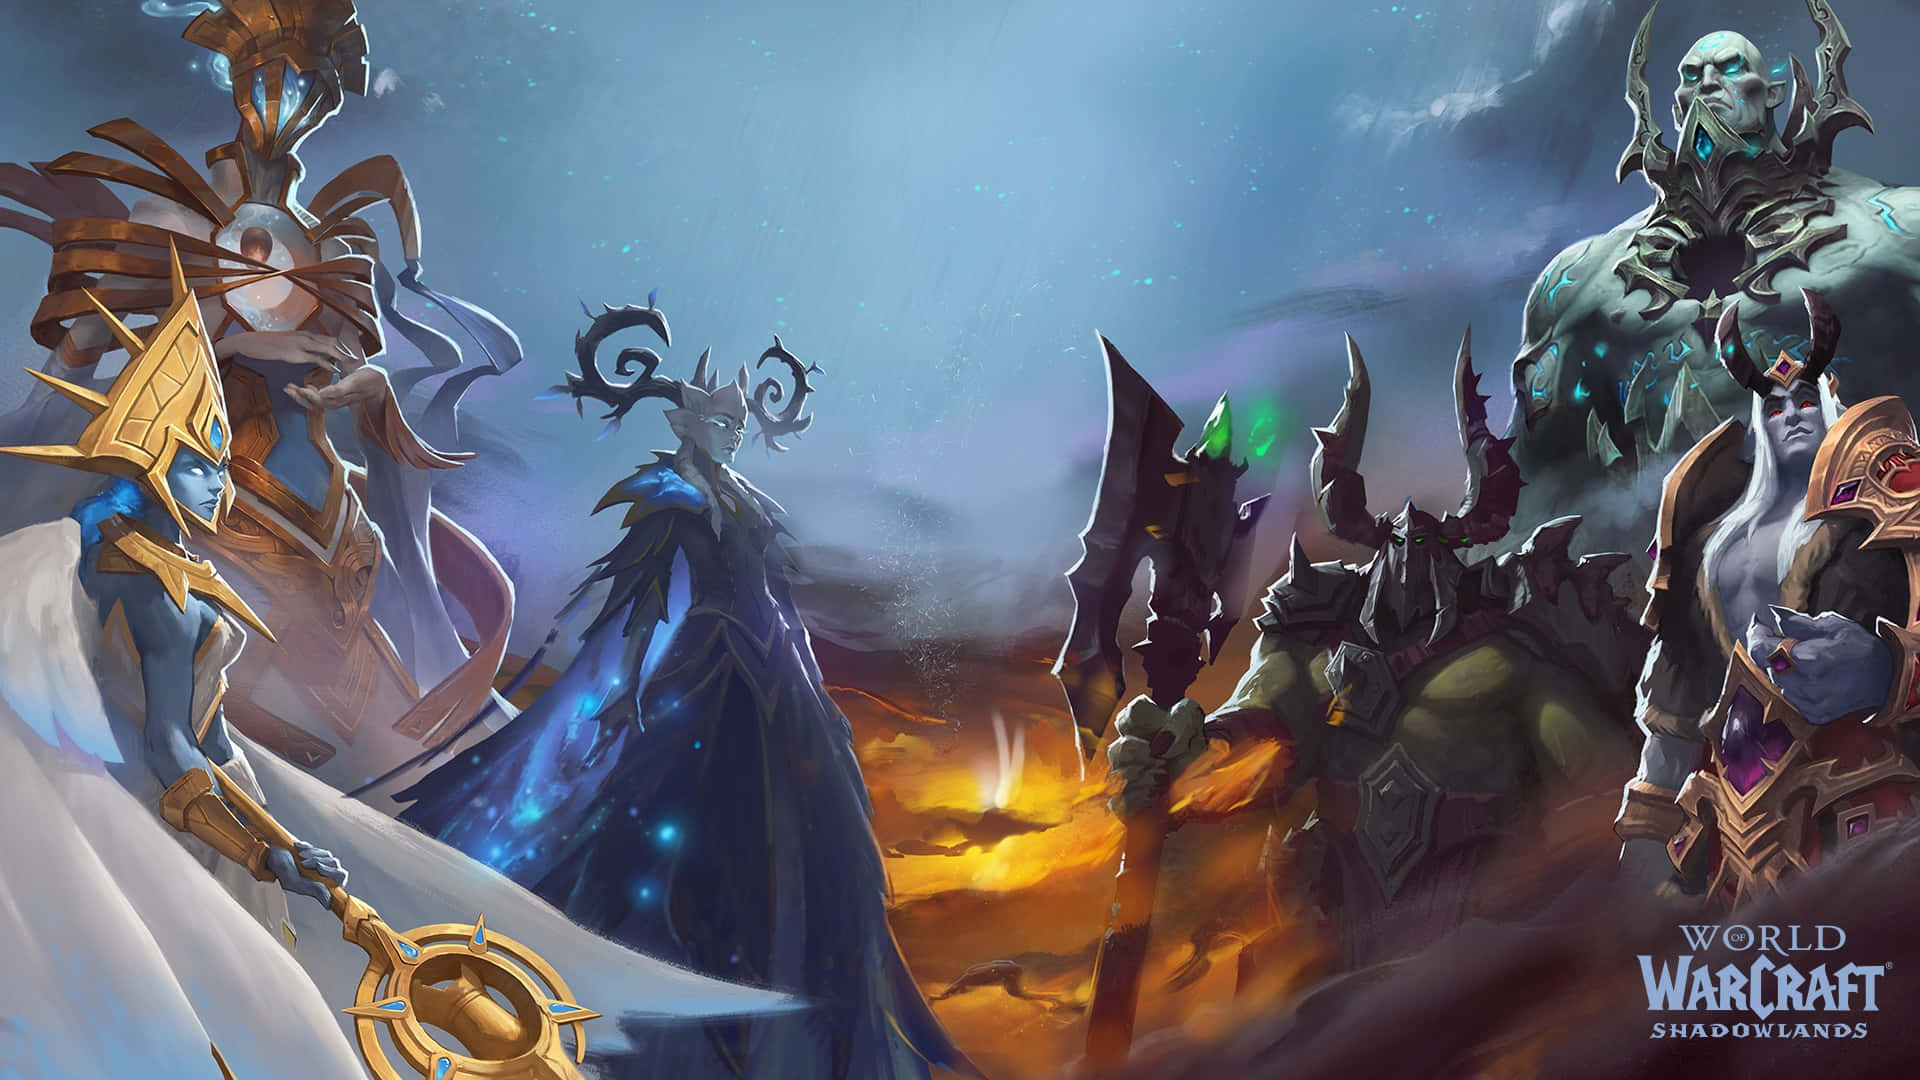 Indled et eventyrligt eventyr med World of Warcraft: Shadowlands. Wallpaper